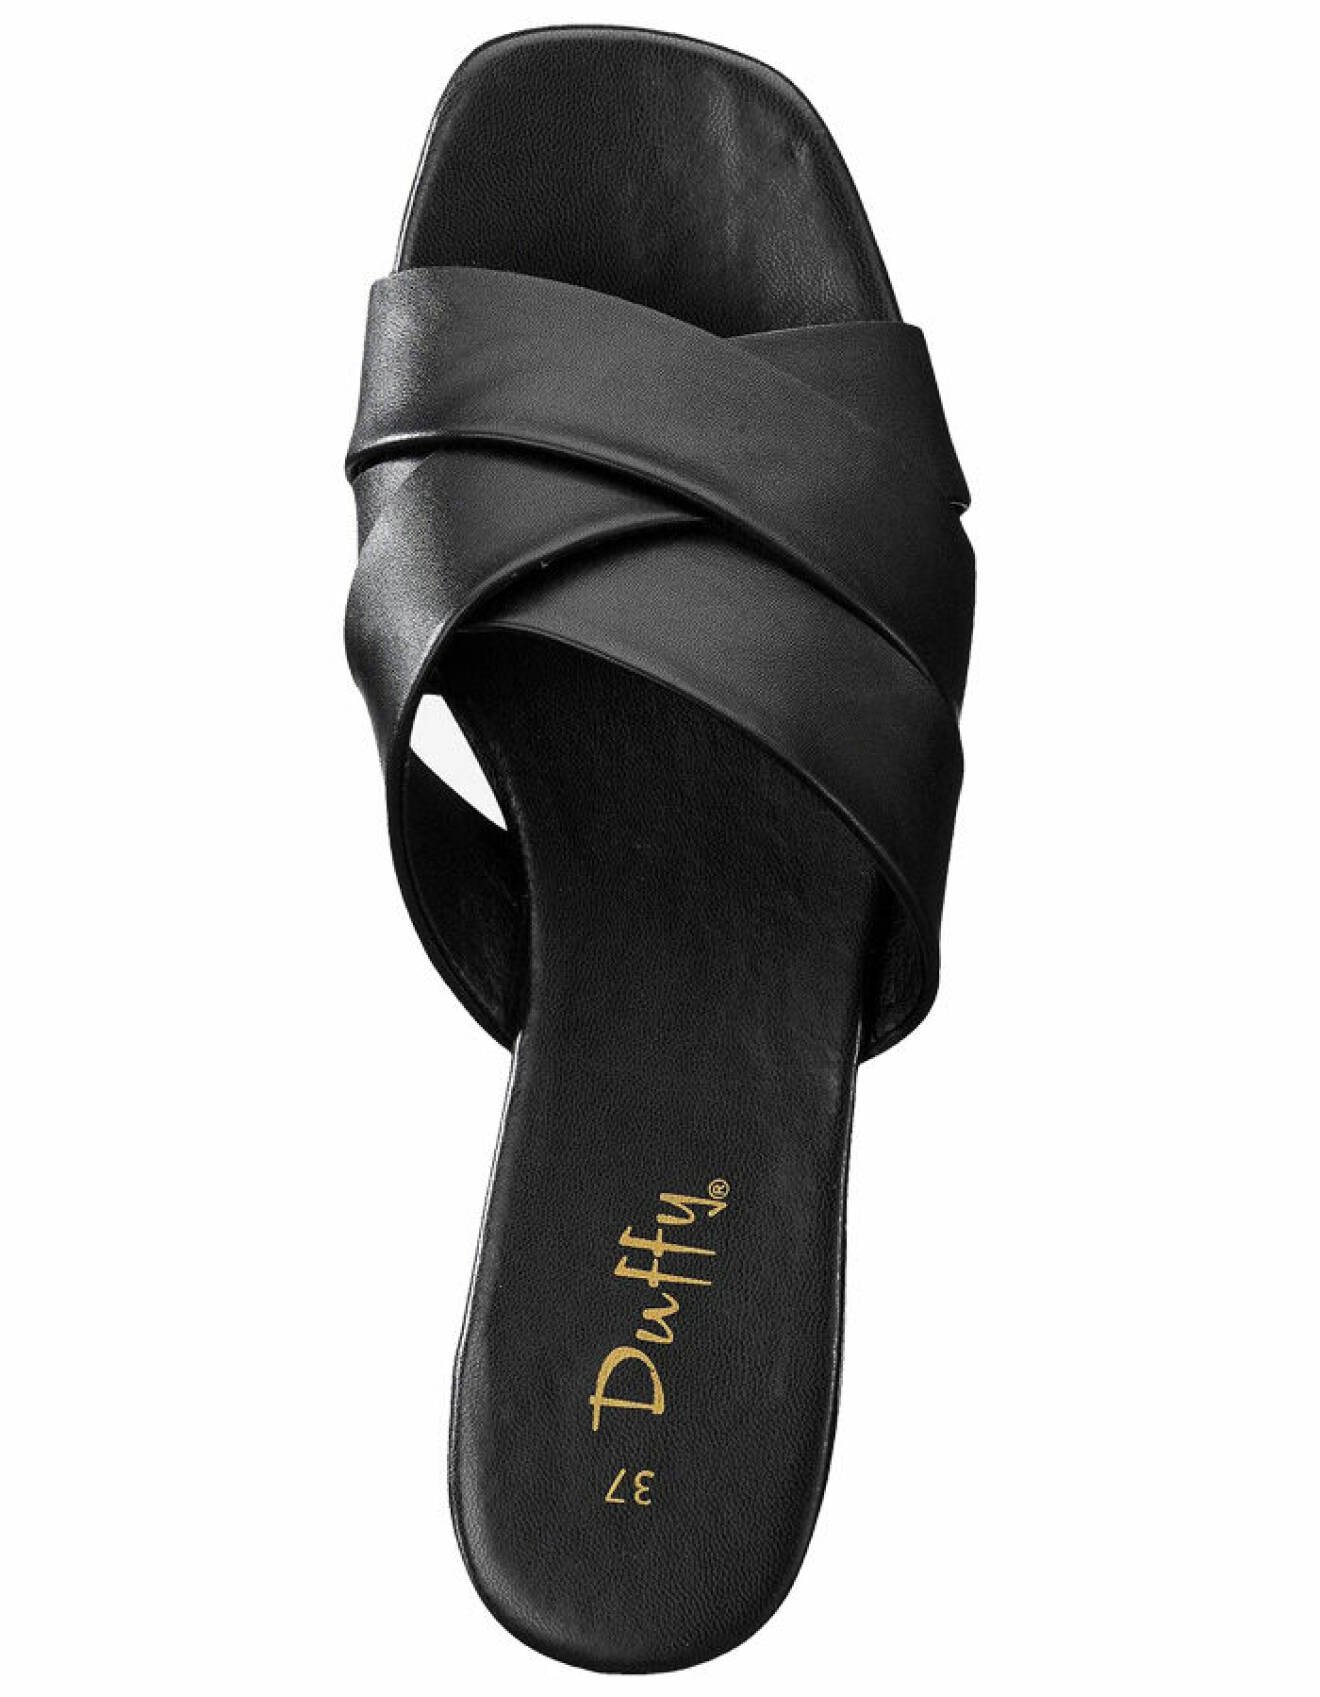 svart sandal för dam i läderimitation med korsade remmar från duffy